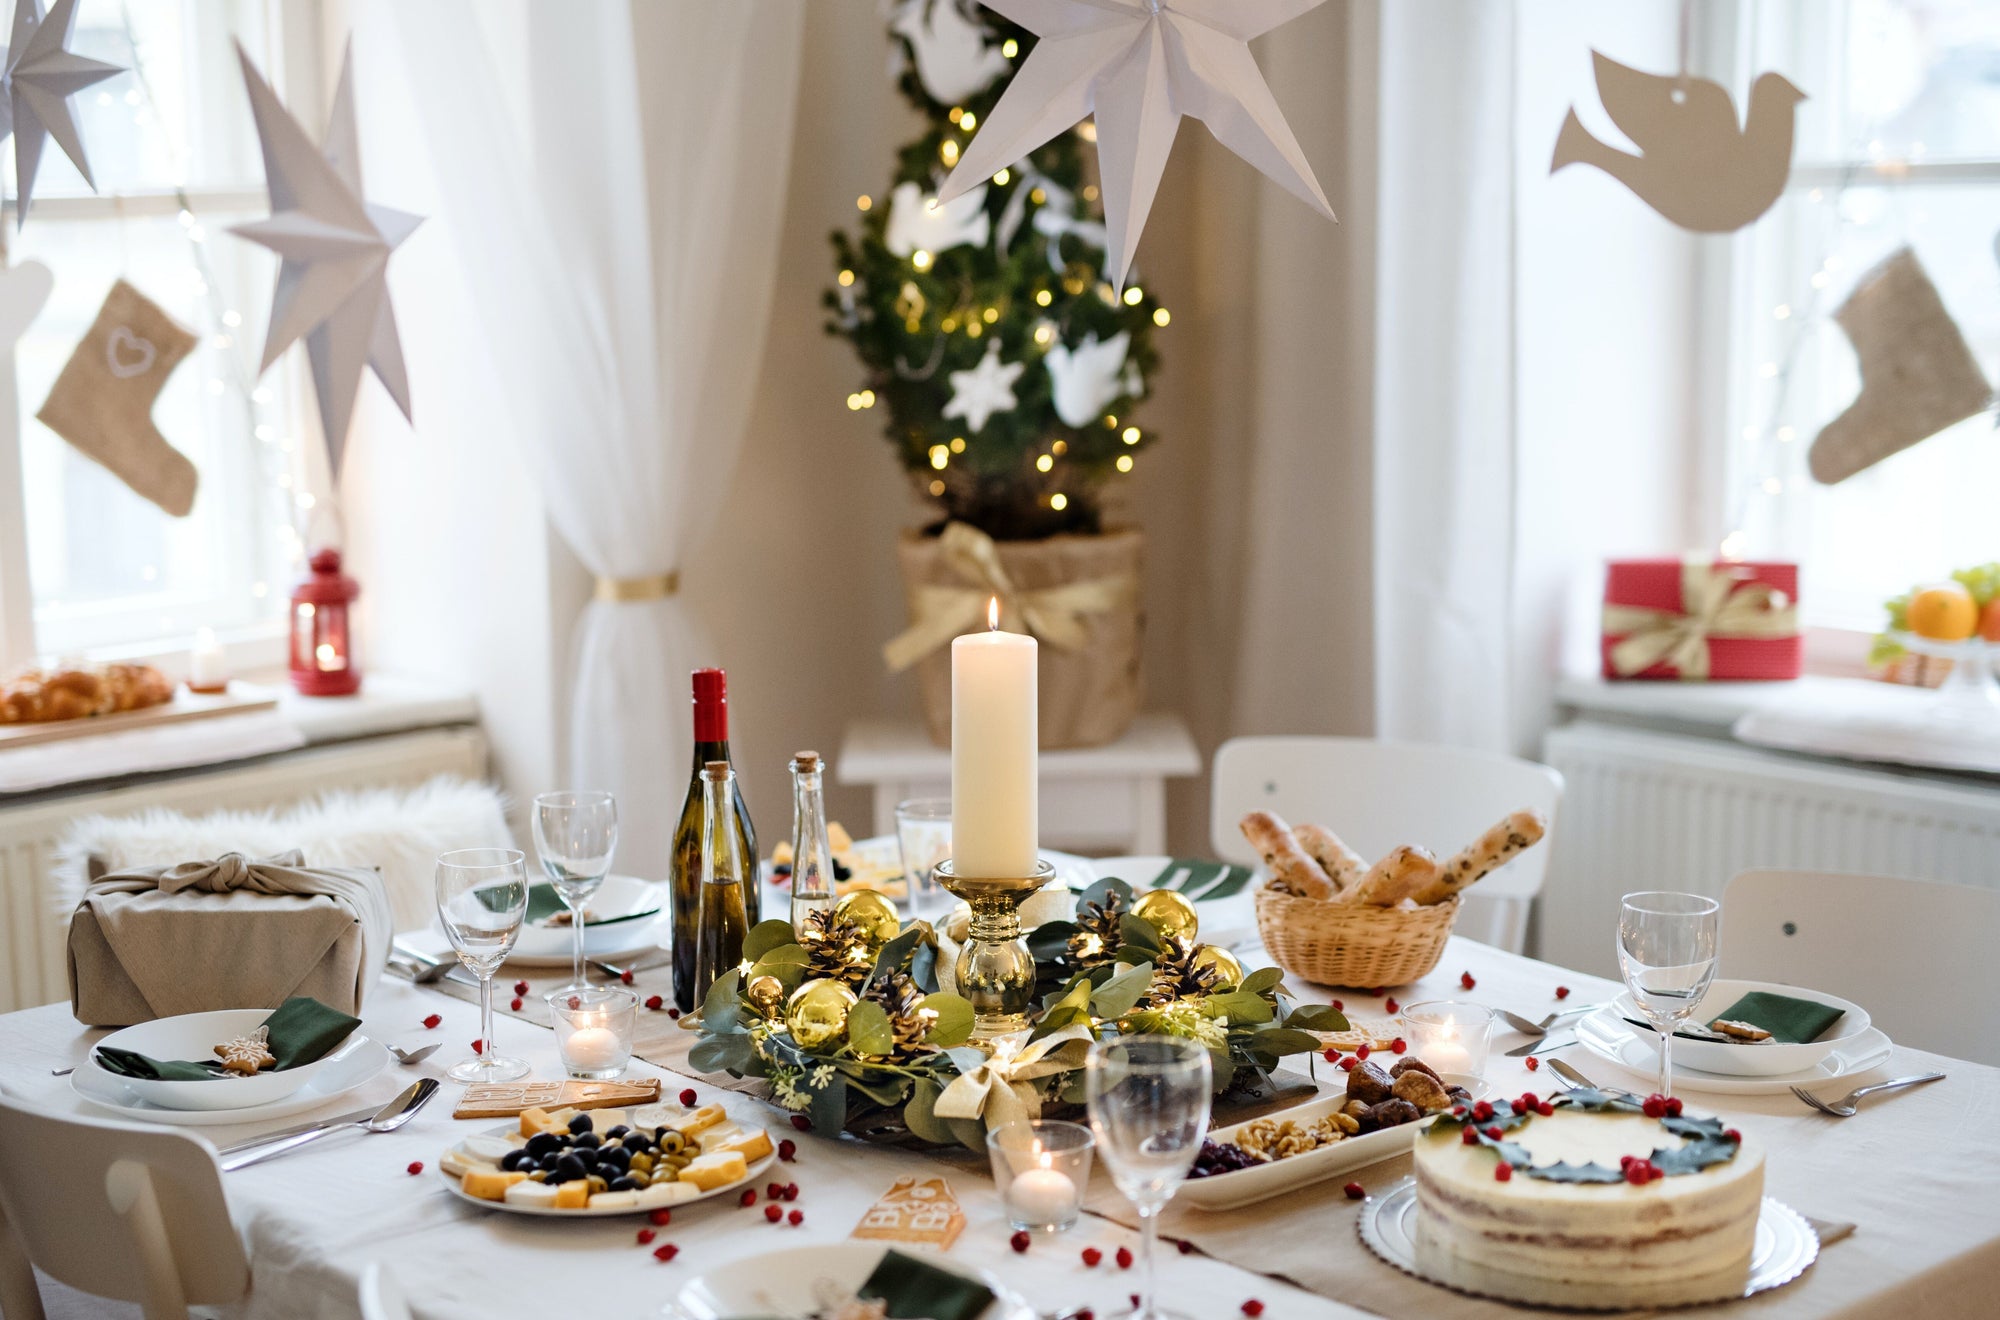 Charcuterie ja talvinen cocktail – näin kokoat trendikkään kahvipöydän joulun juhlitaan!